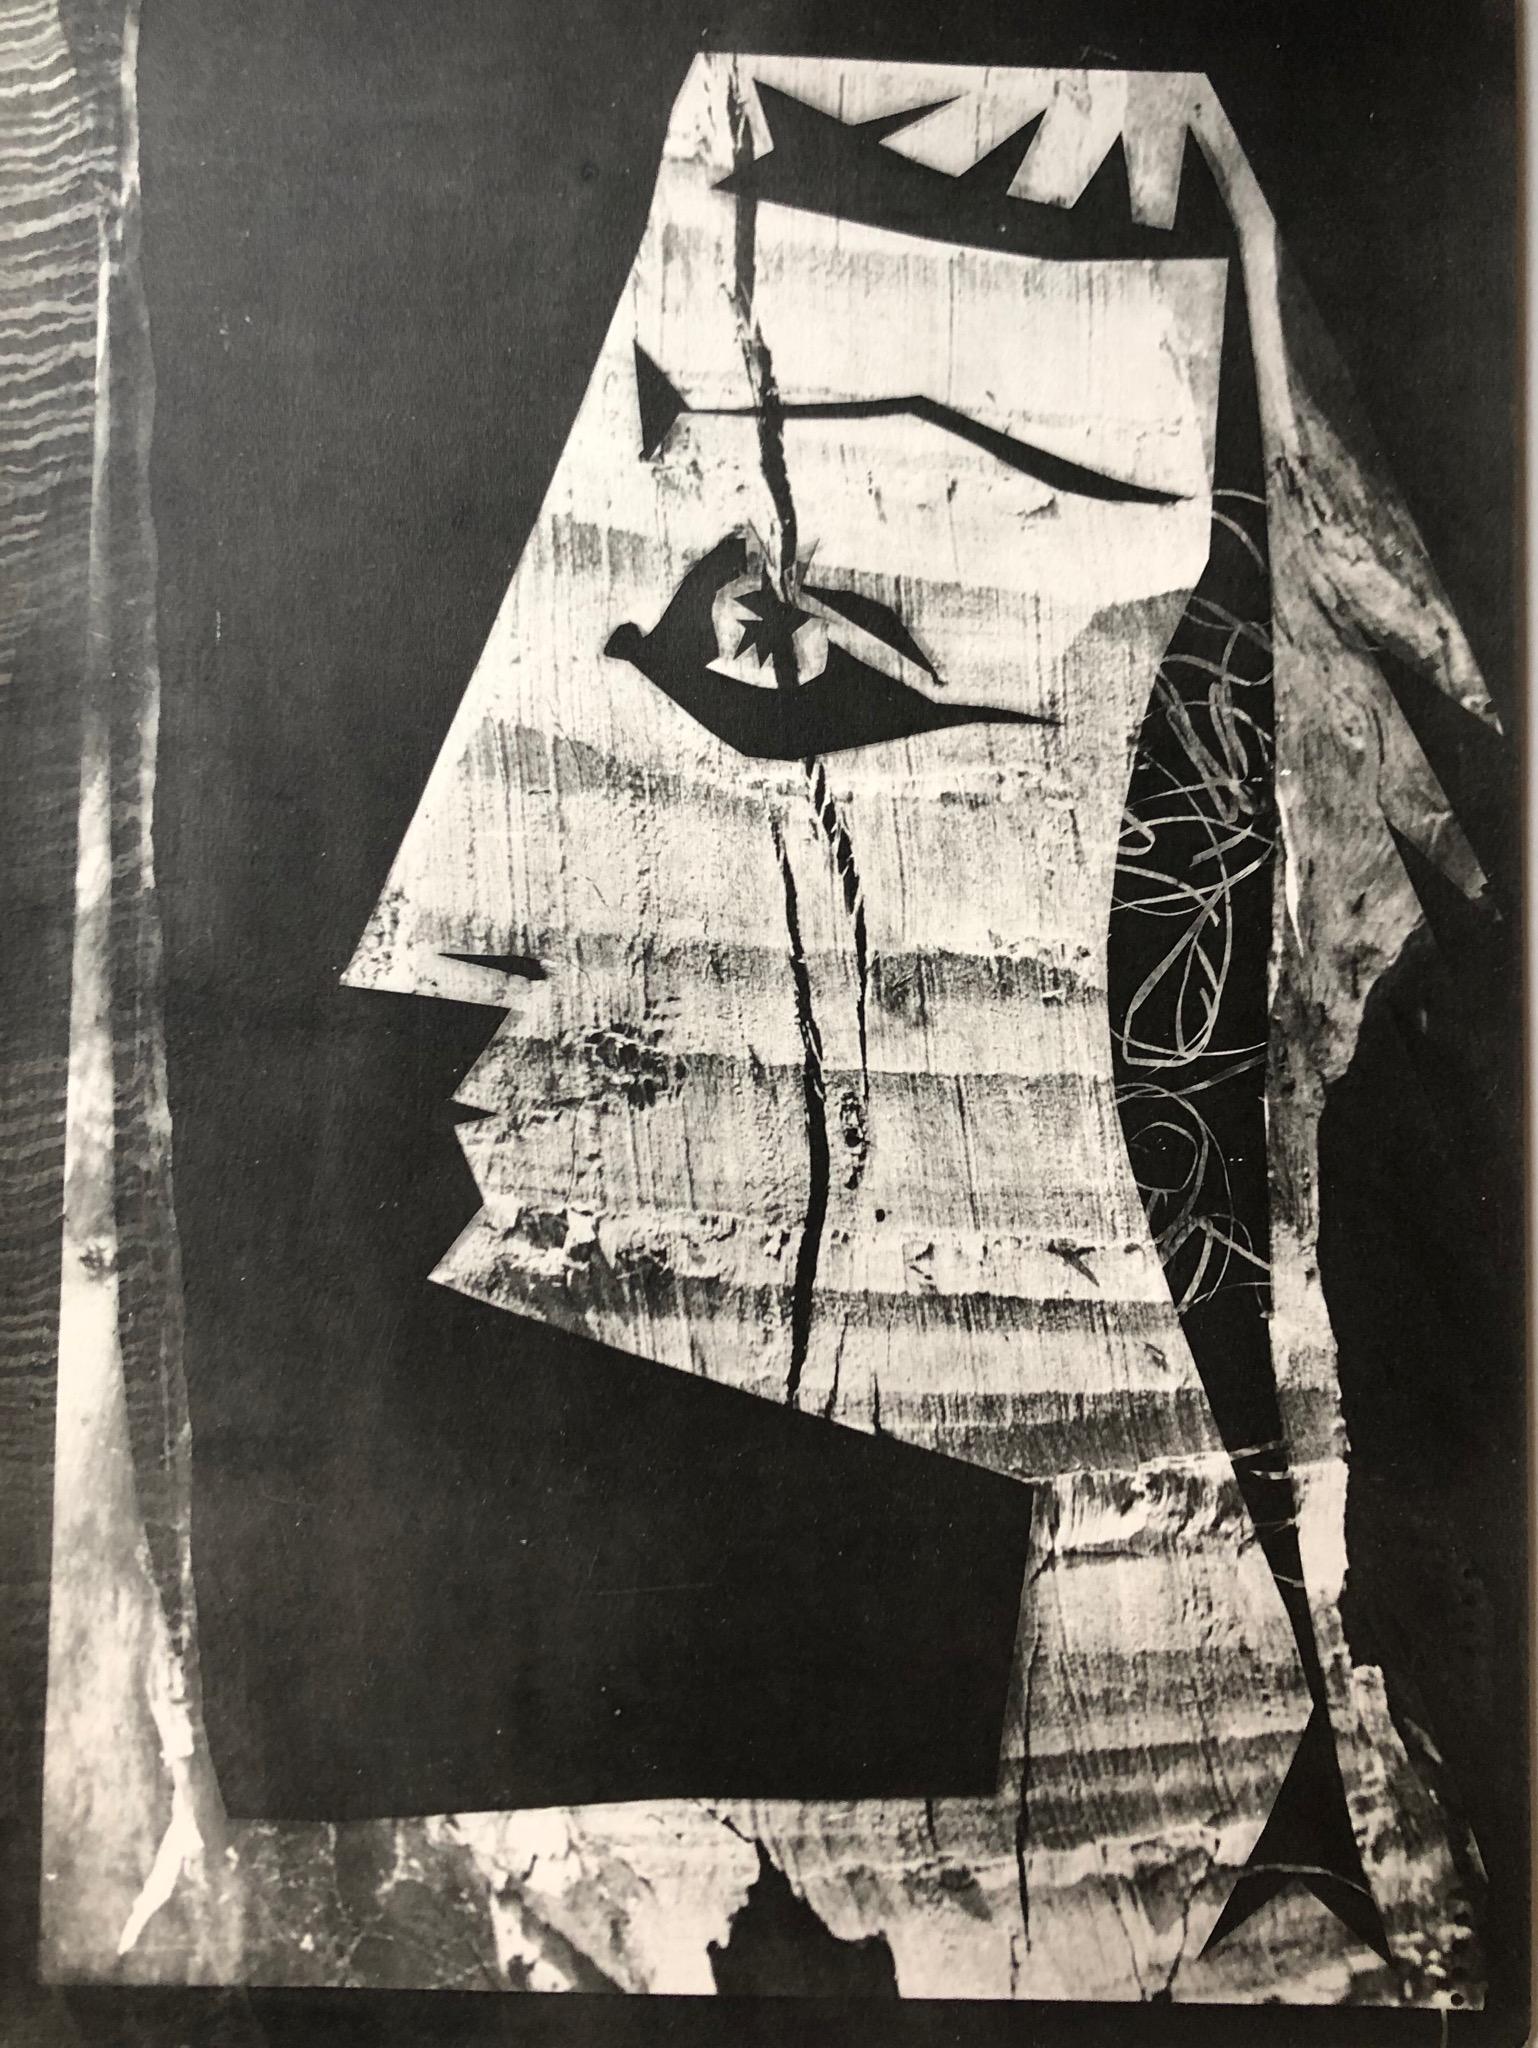 Pablo Picasso Abstract Print - Jacqueline au regard d'Oiseaux